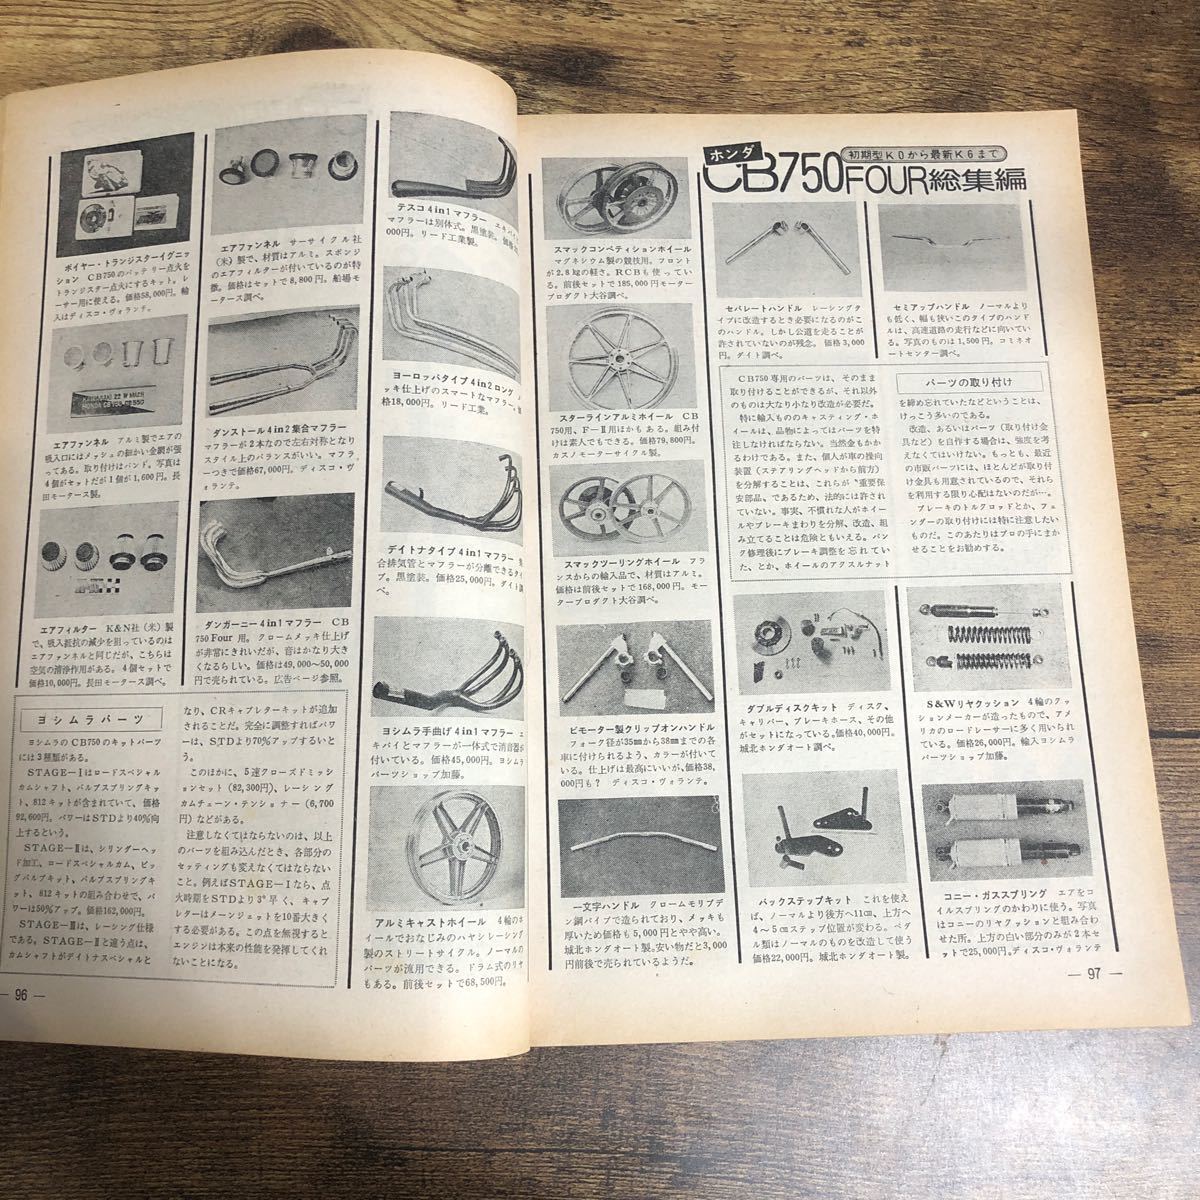 【バイク雑誌 1976.9発行】モーターサイクリスト 1970年代バイク雑誌の画像9